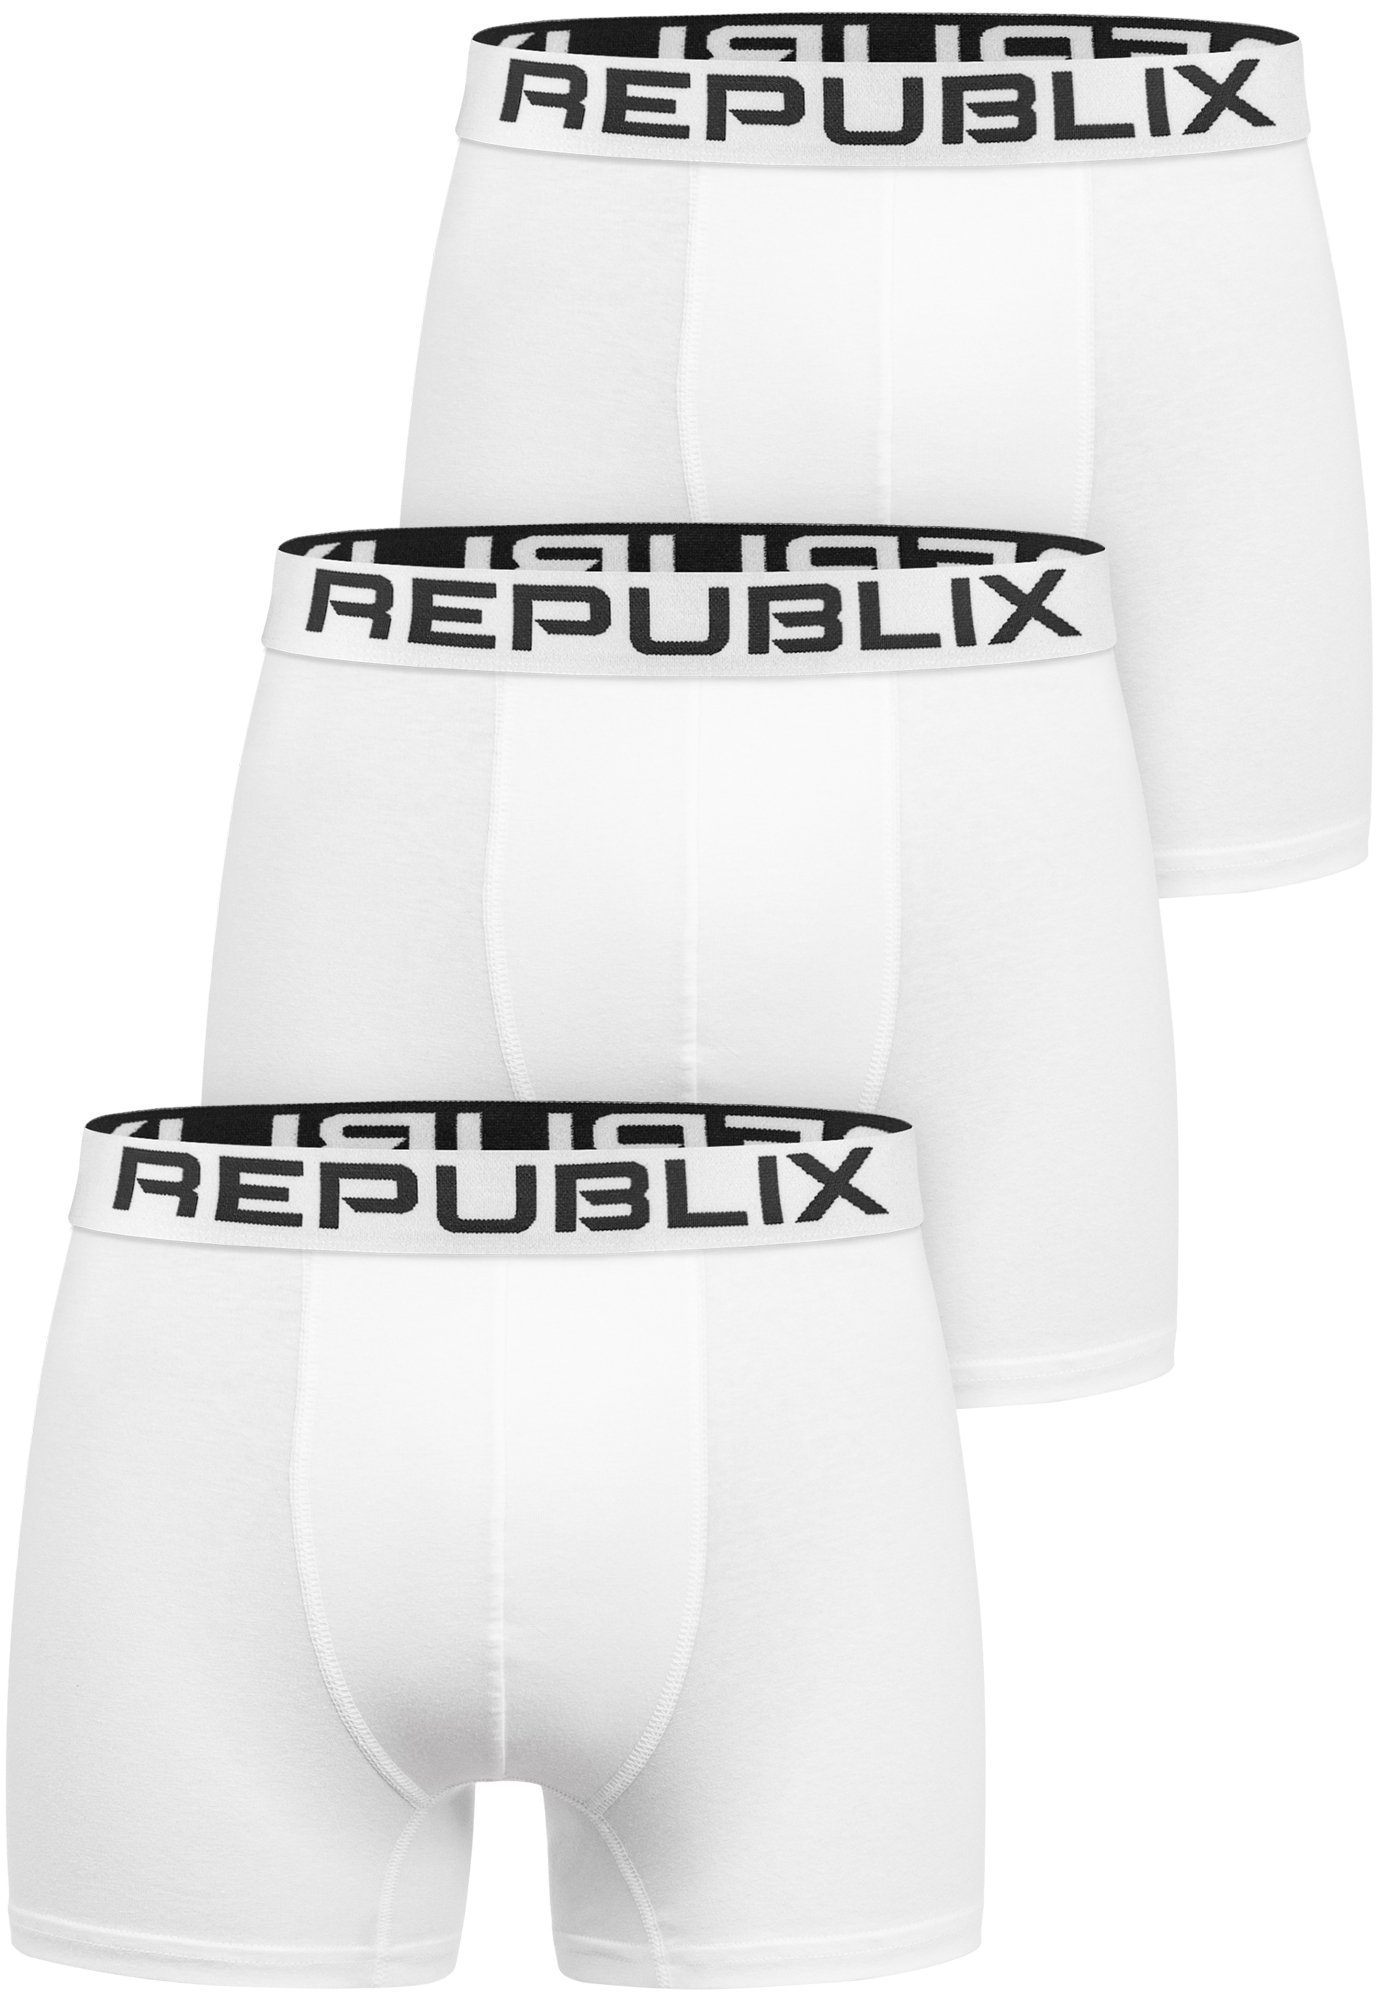 REPUBLIX Boxershorts DON (3er-Pack) Herren Baumwolle Männer Unterhose Unterwäsche